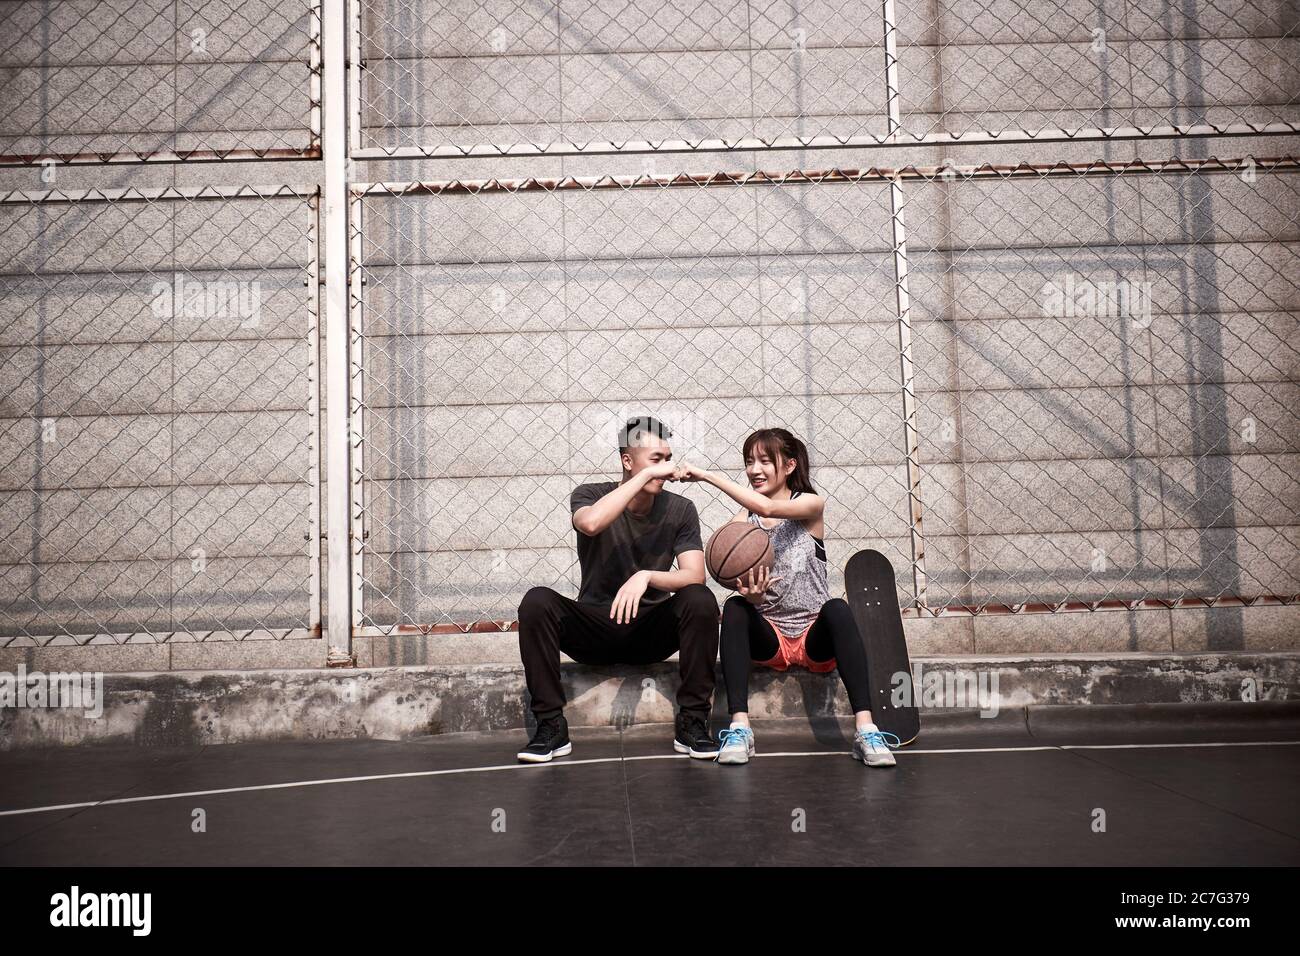 Junge asiatische Erwachsene Mann und Frau stoßen Fäuste auf einem Outdoor-Basketballplatz Stockfoto